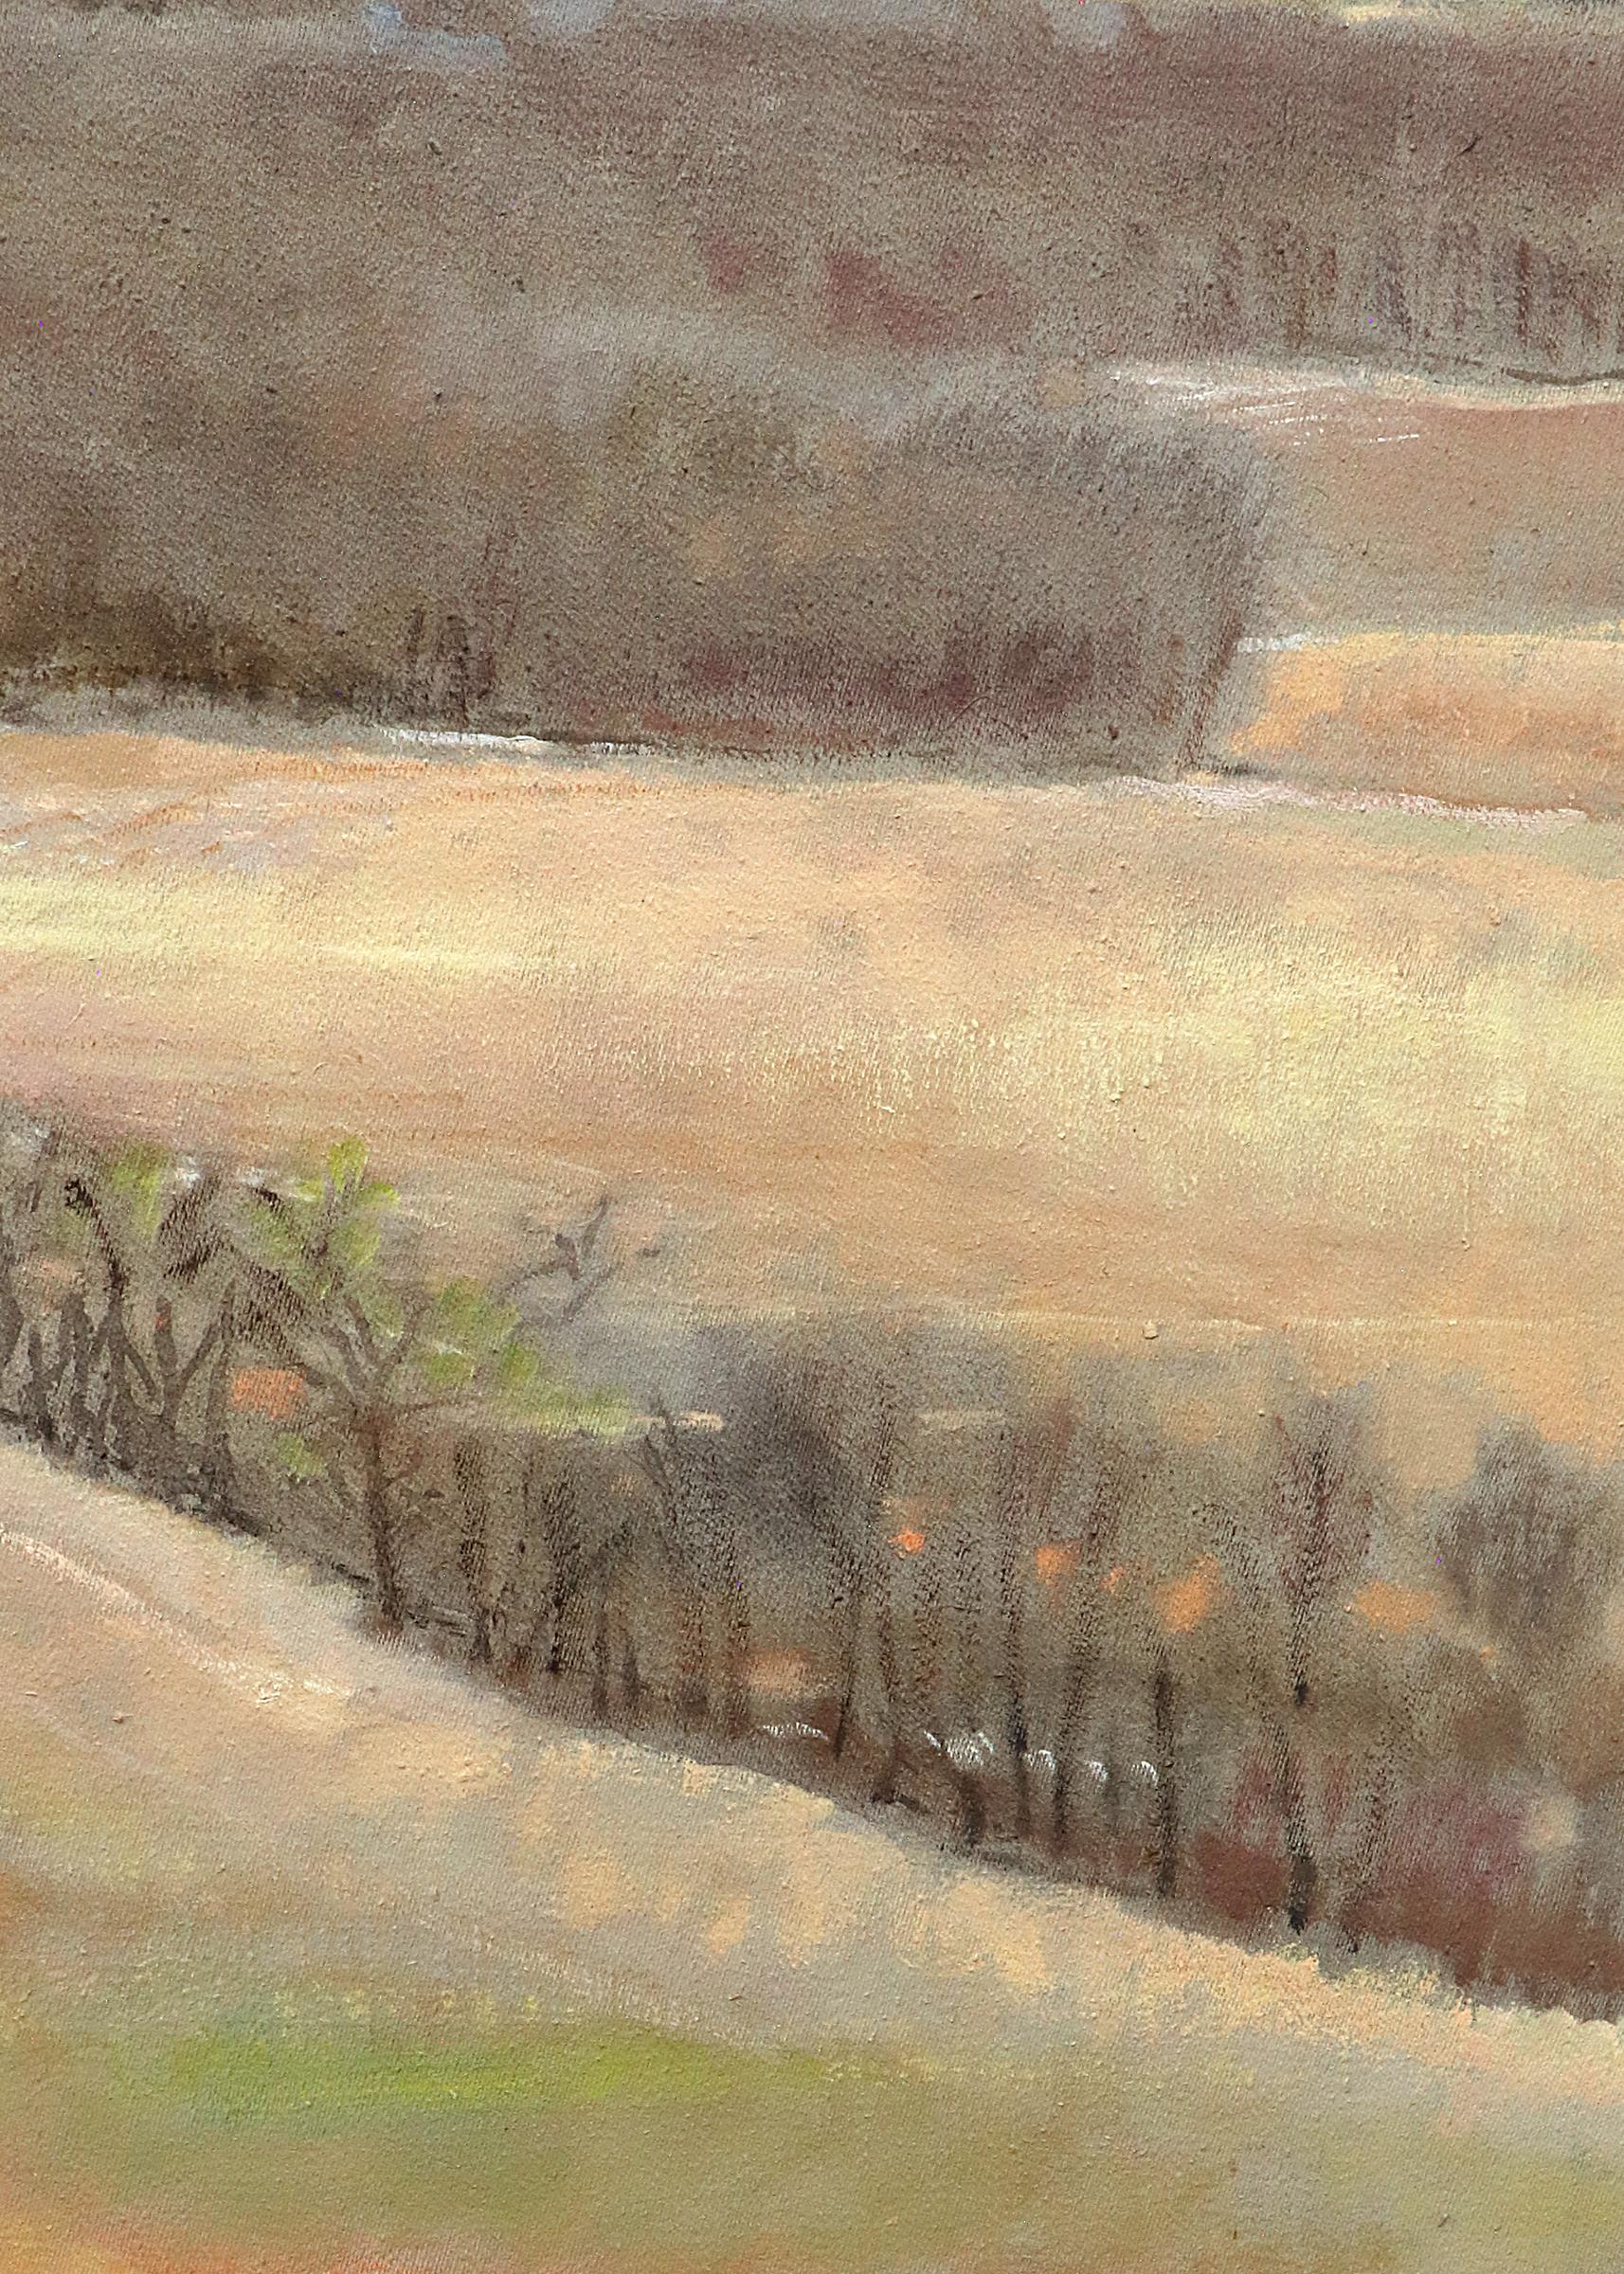 Paysage du Kansas peint à l'huile sur toile par Robert N. Sudlow (1920-2010) intitulé 